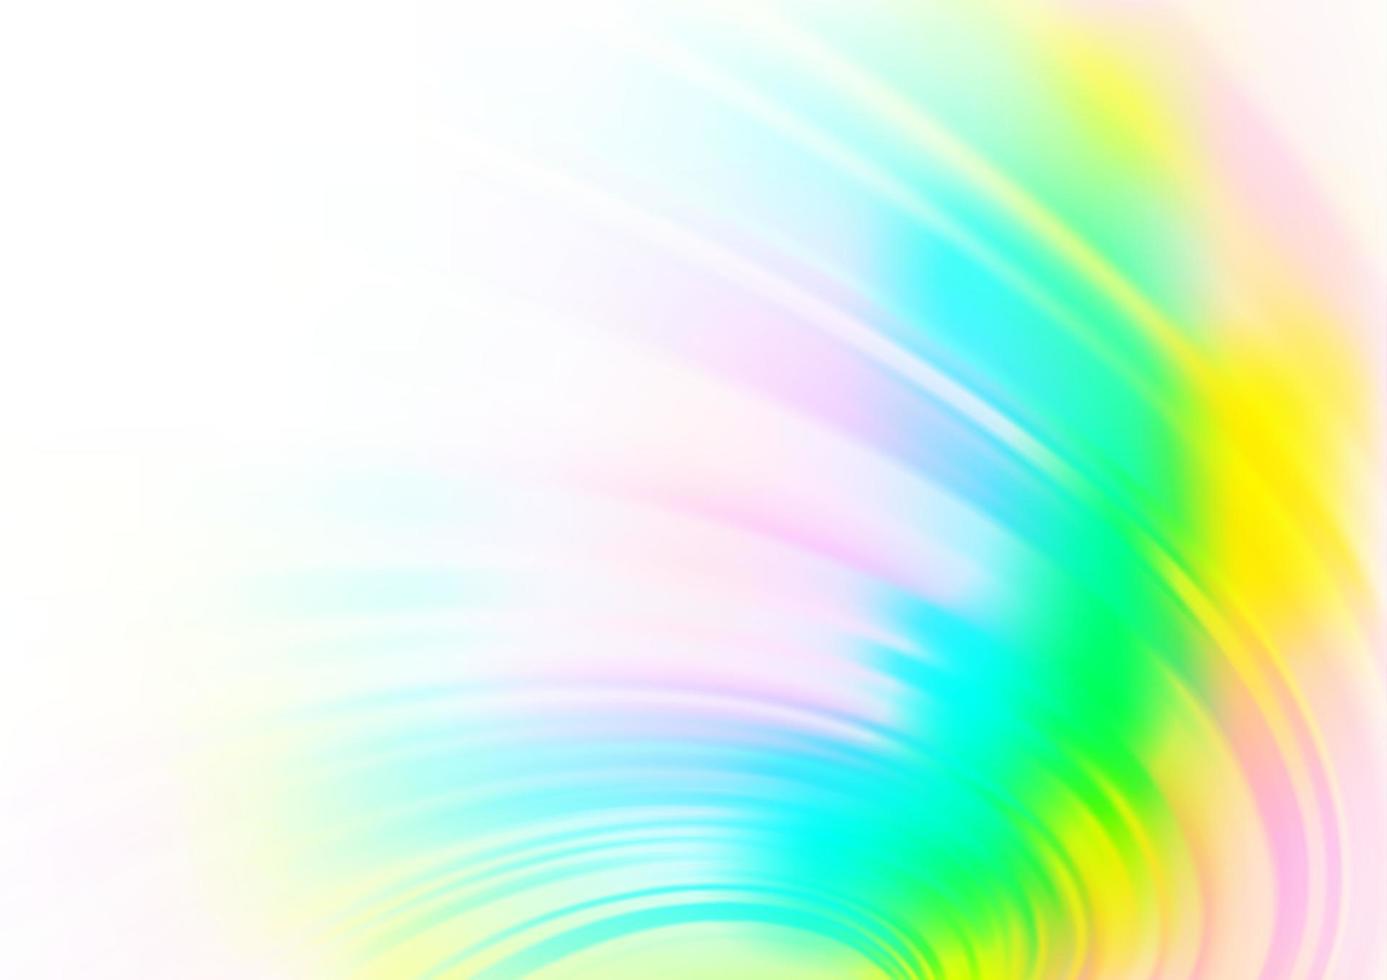 ljus mångfärgad, regnbåge vektor modern elegant bakgrund.